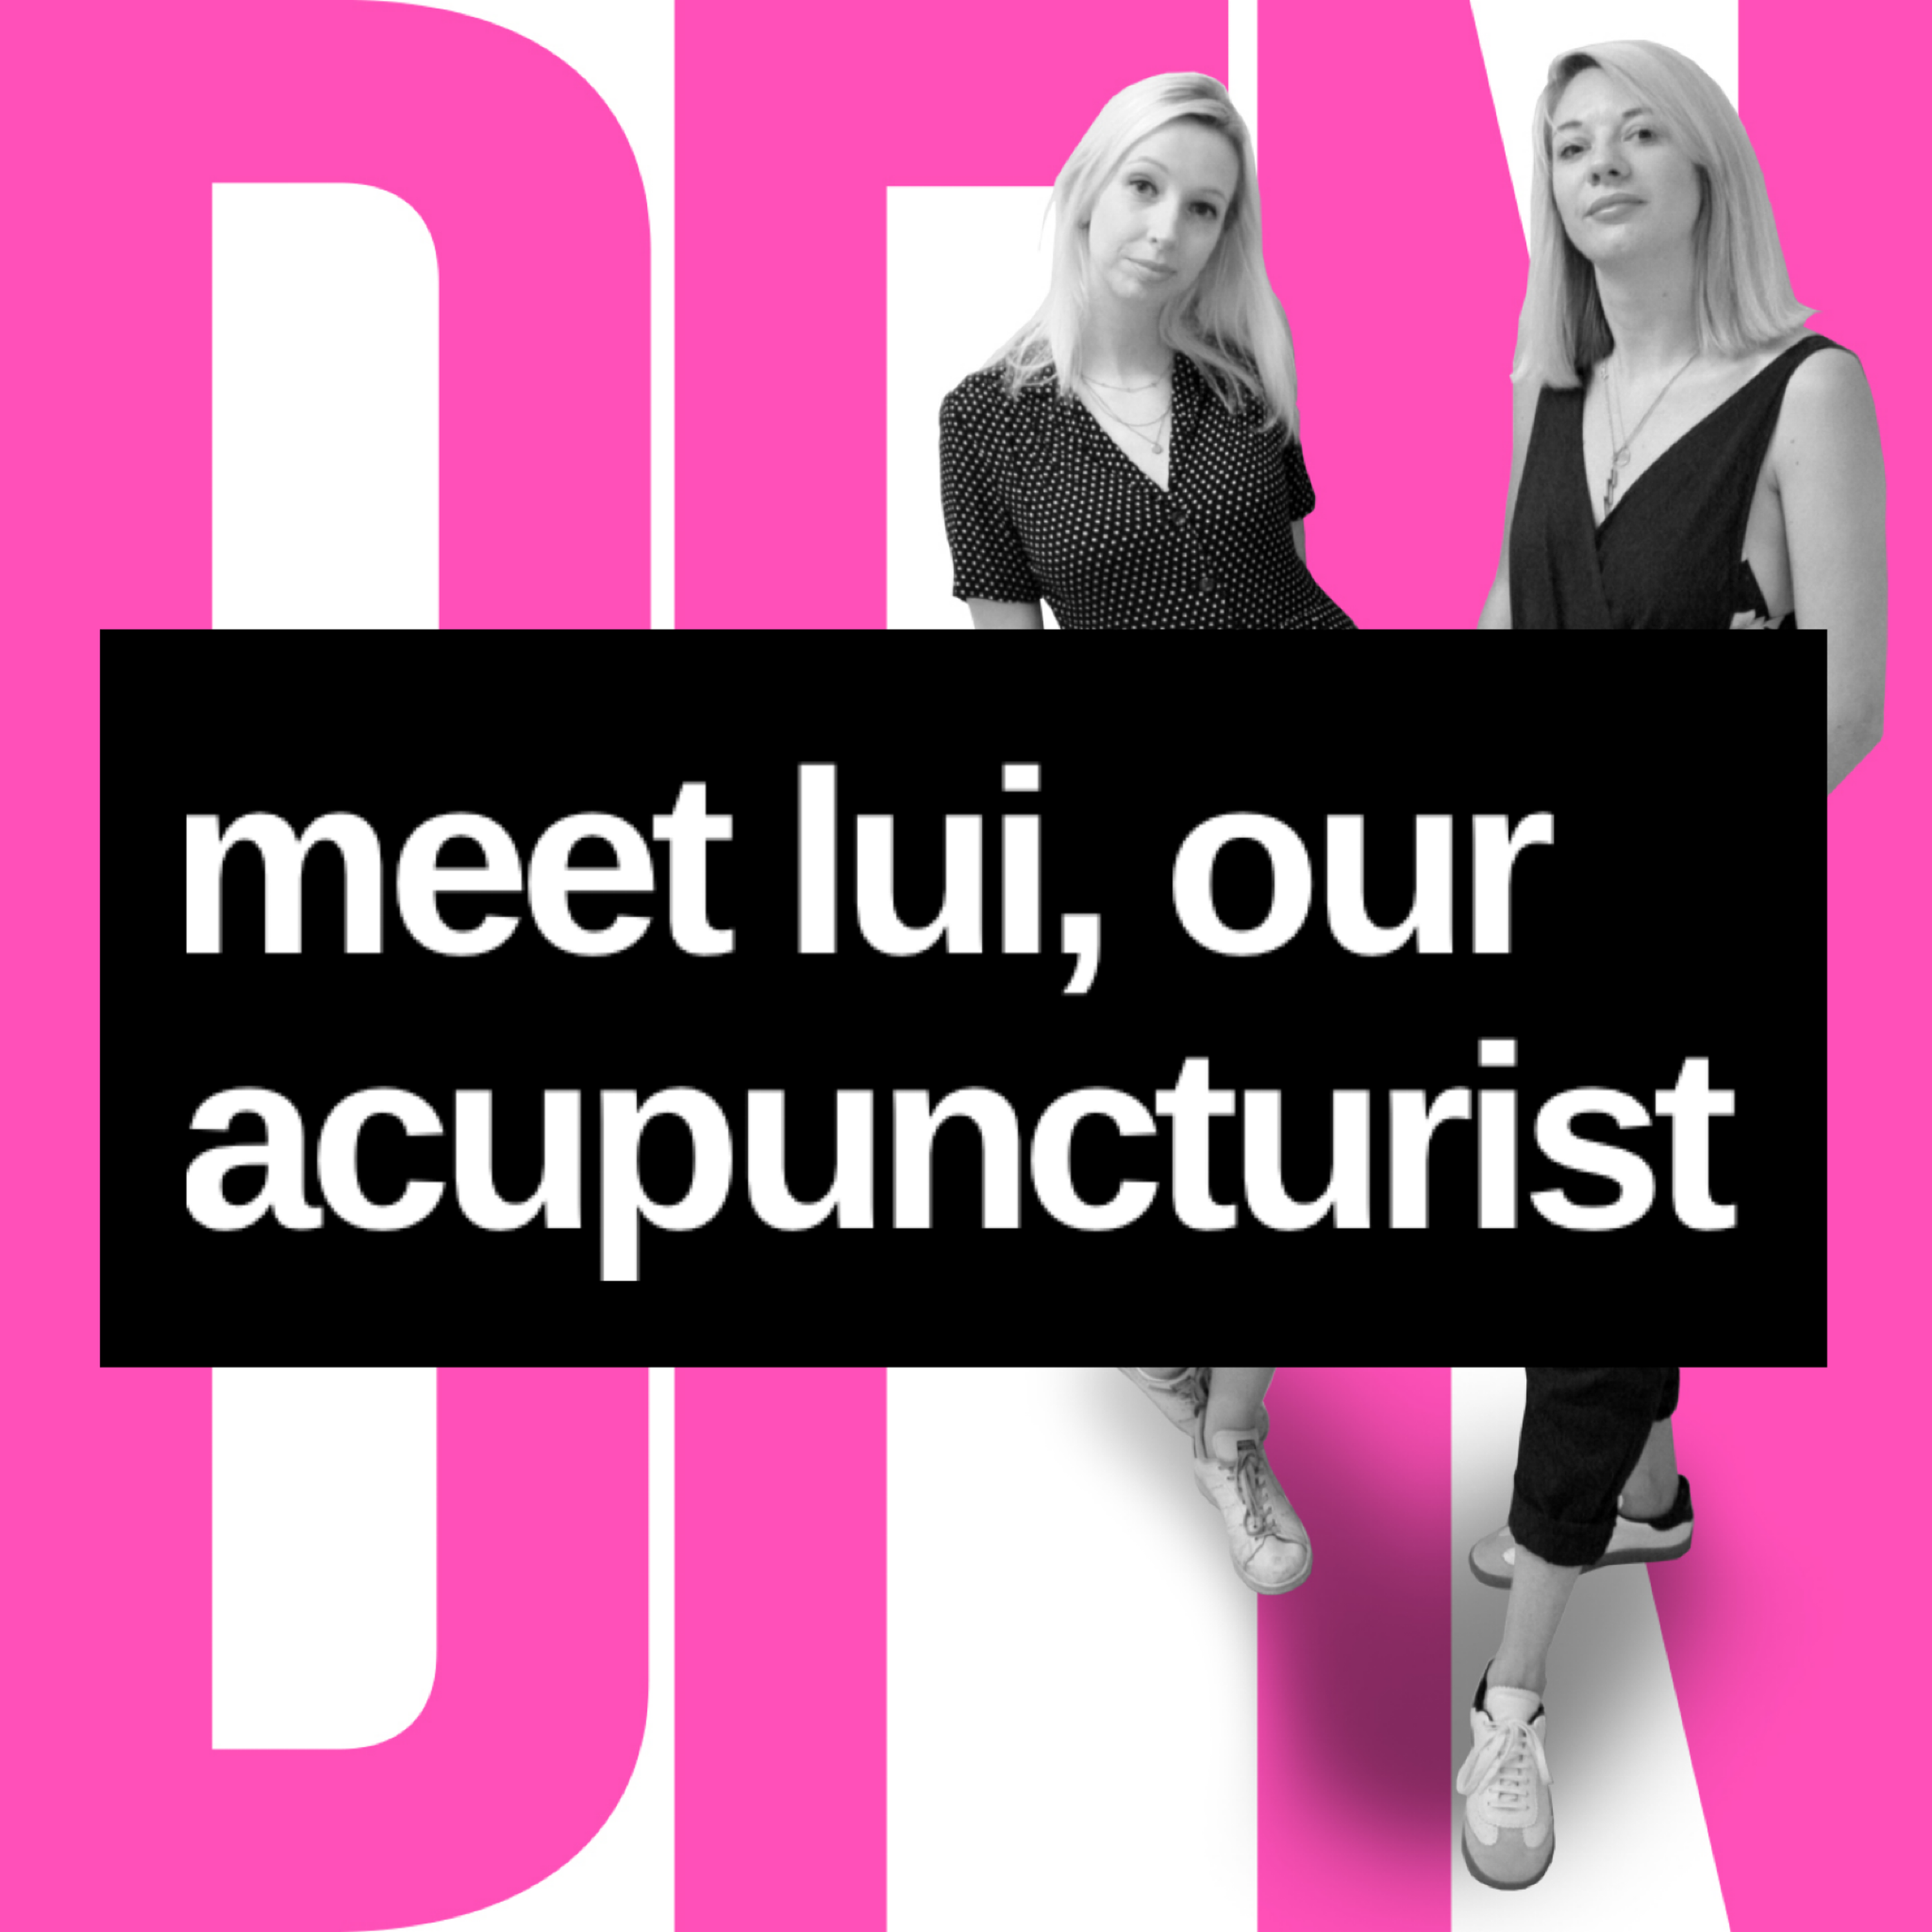 Meet Lui, our acupuncturist